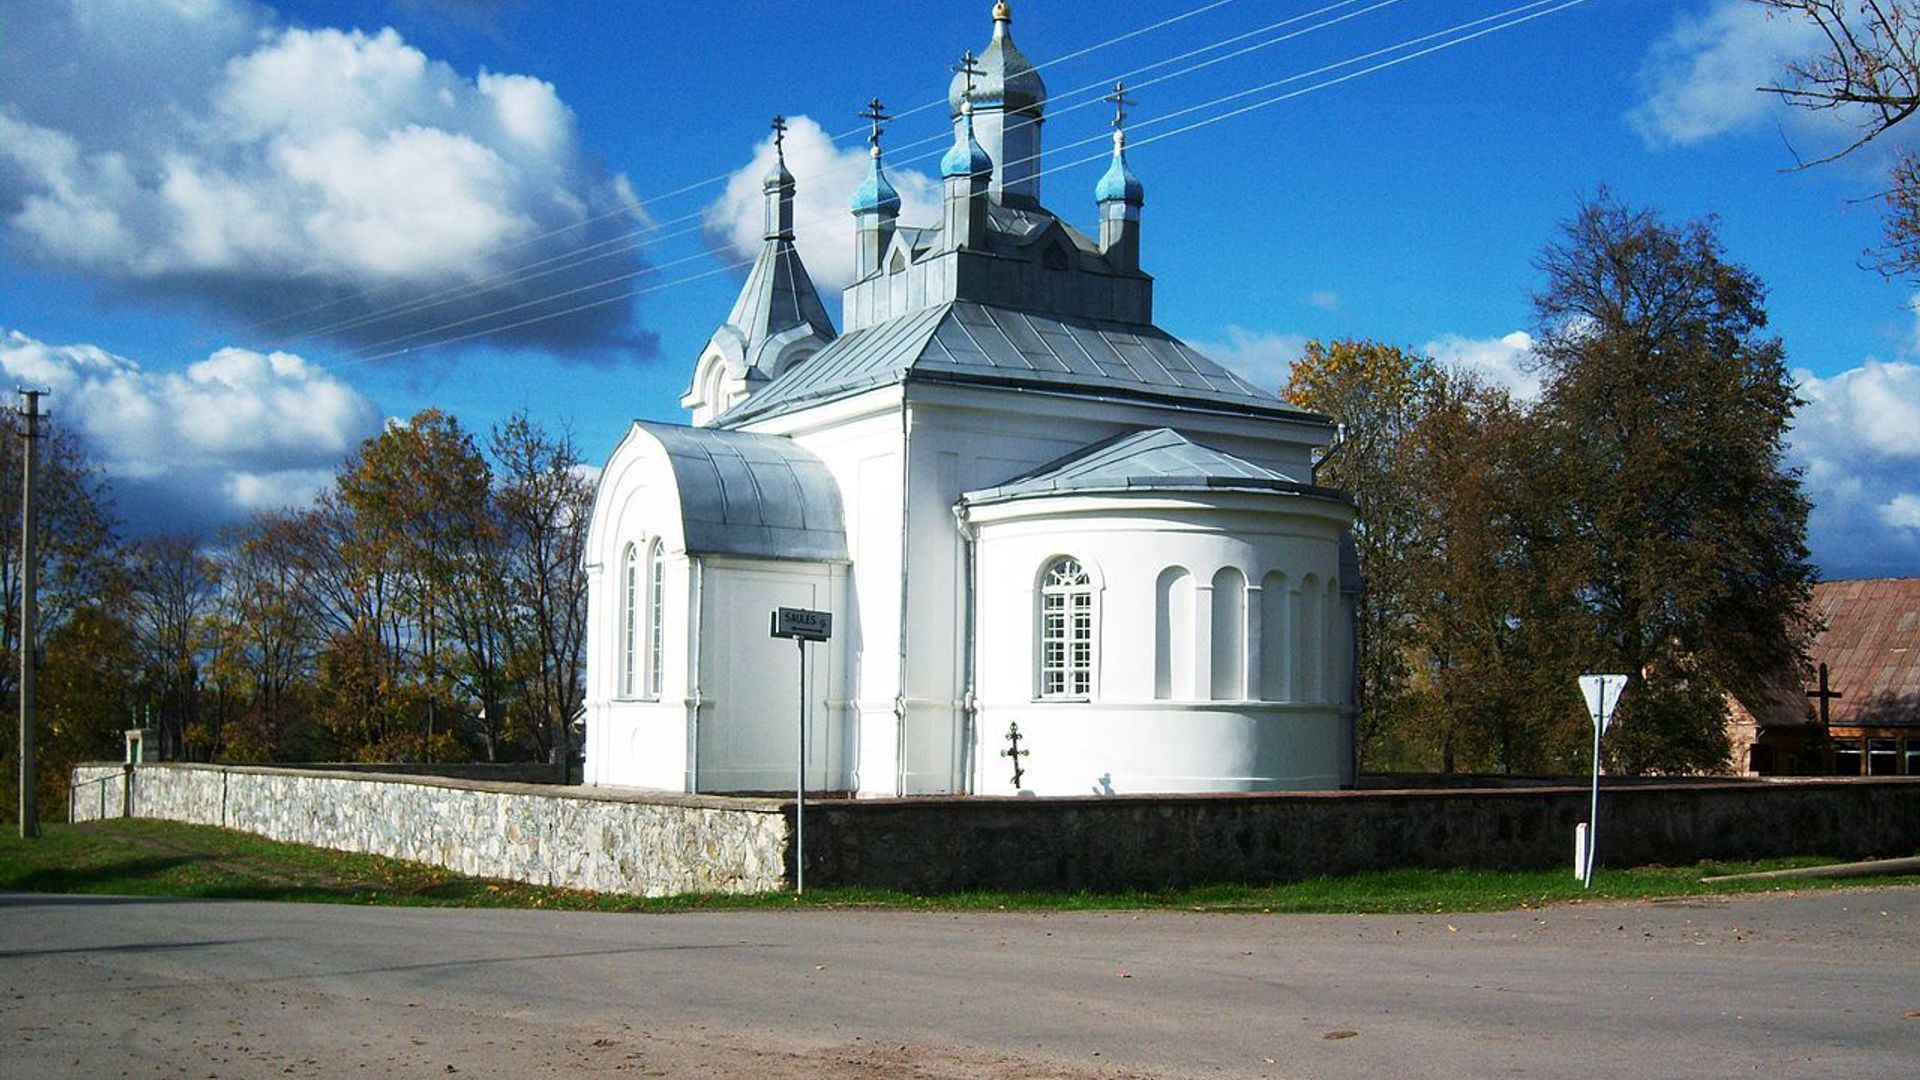 Užusalių Šv. Aleksandro Neviškio cerkvė